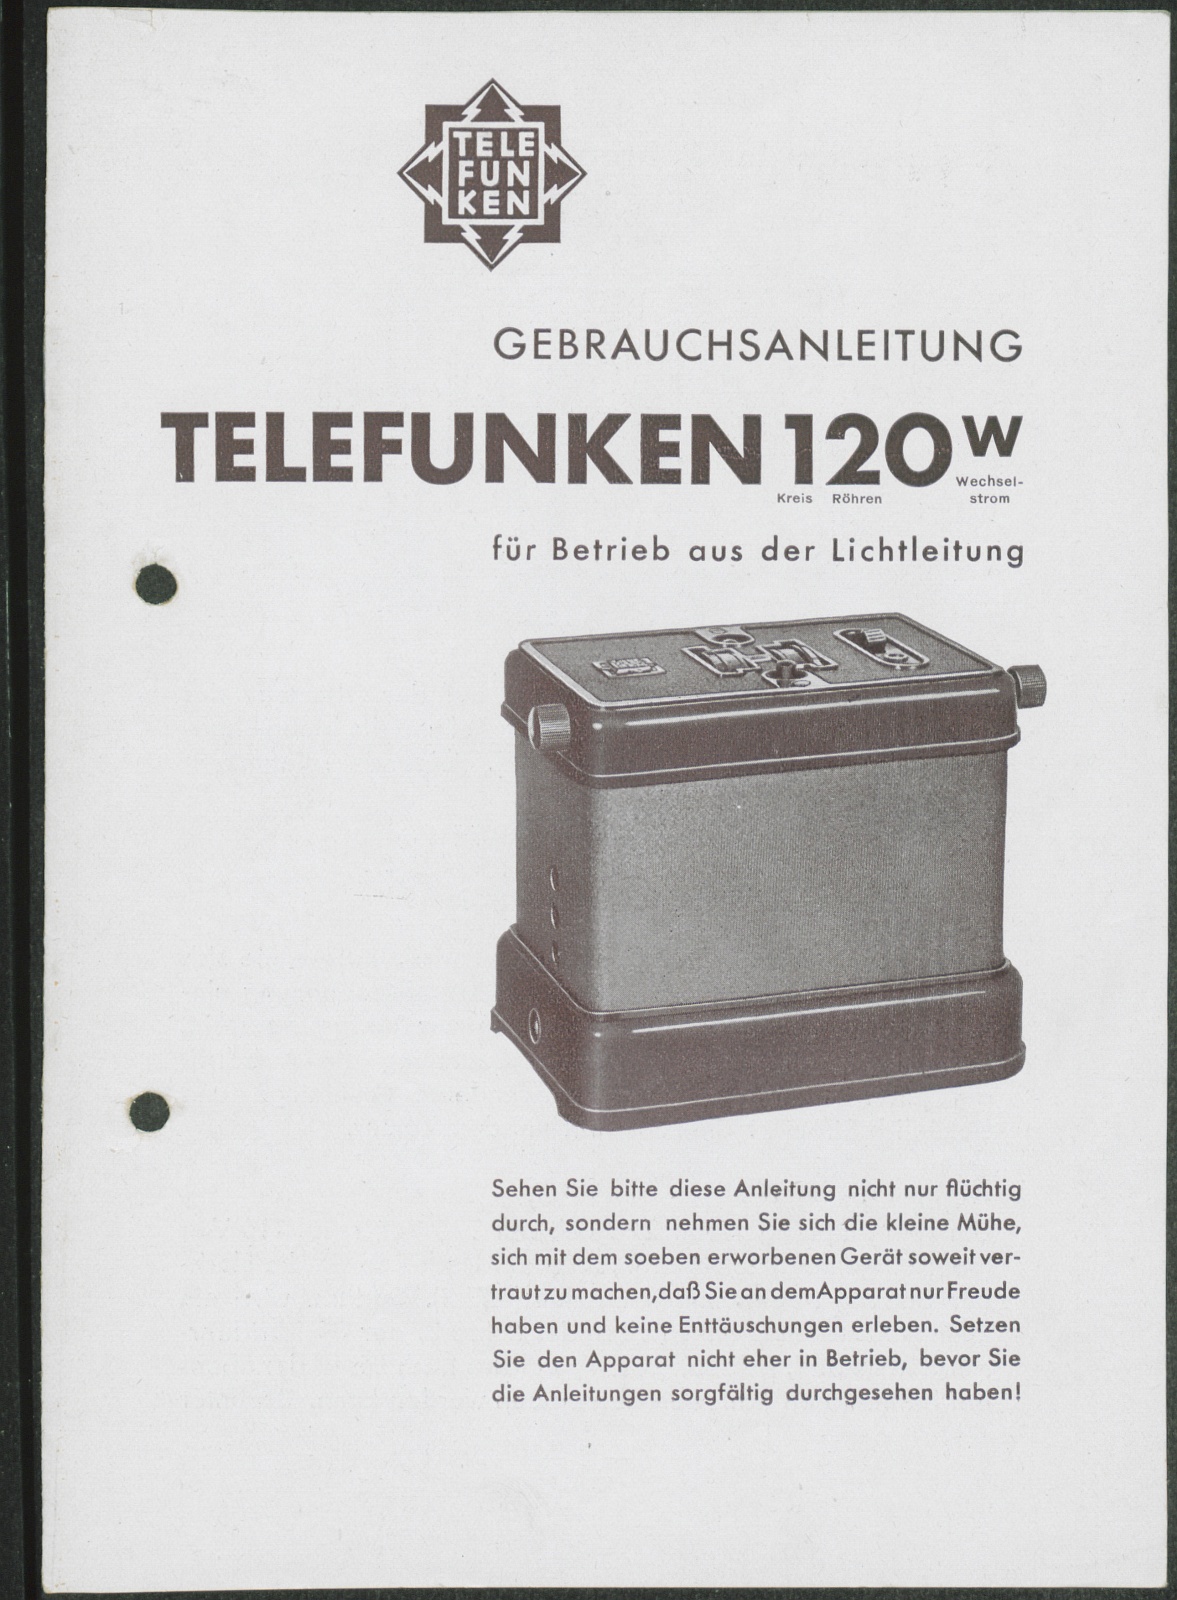 Bedienungsanleitung: Gebrauchsanleitung Telefunken 120 W für Betrieb aus der Lichtleitung (Stiftung Deutsches Technikmuseum Berlin CC0)